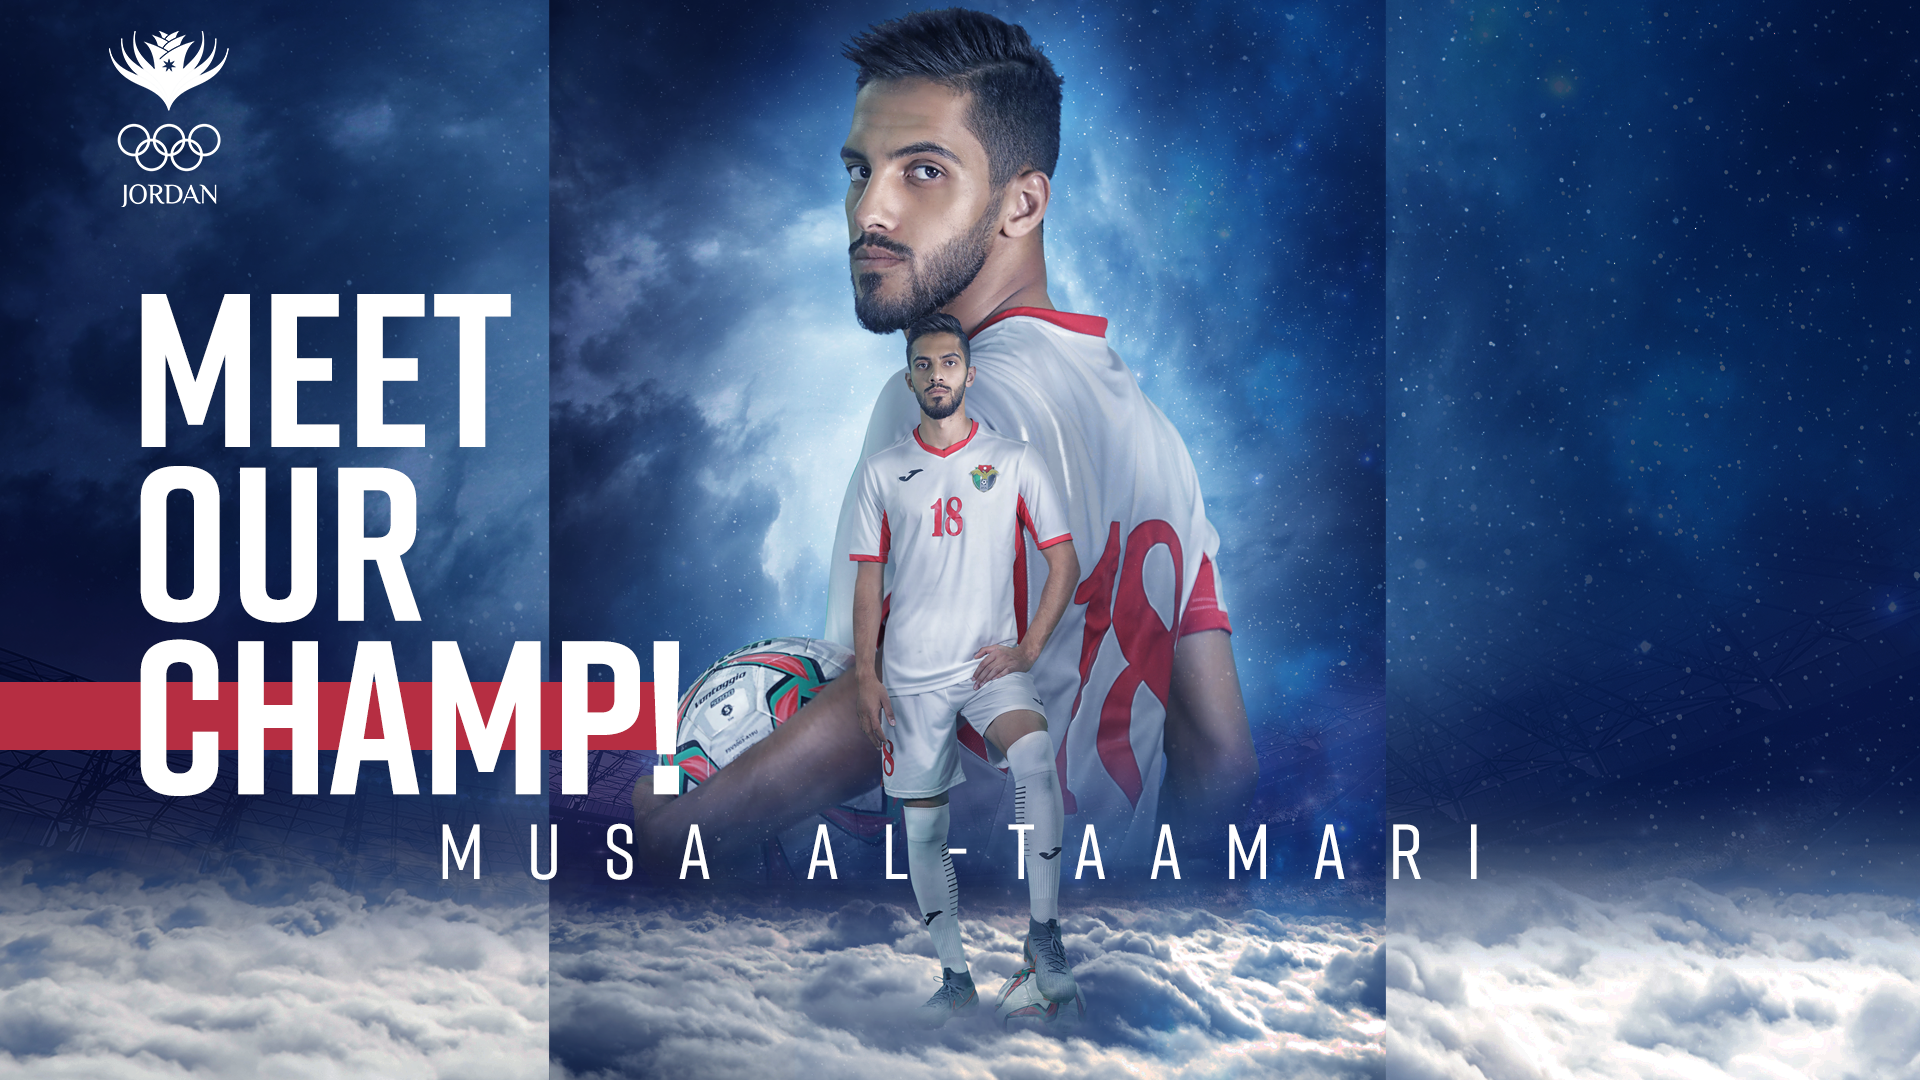 Al Tamari shines for Jordan